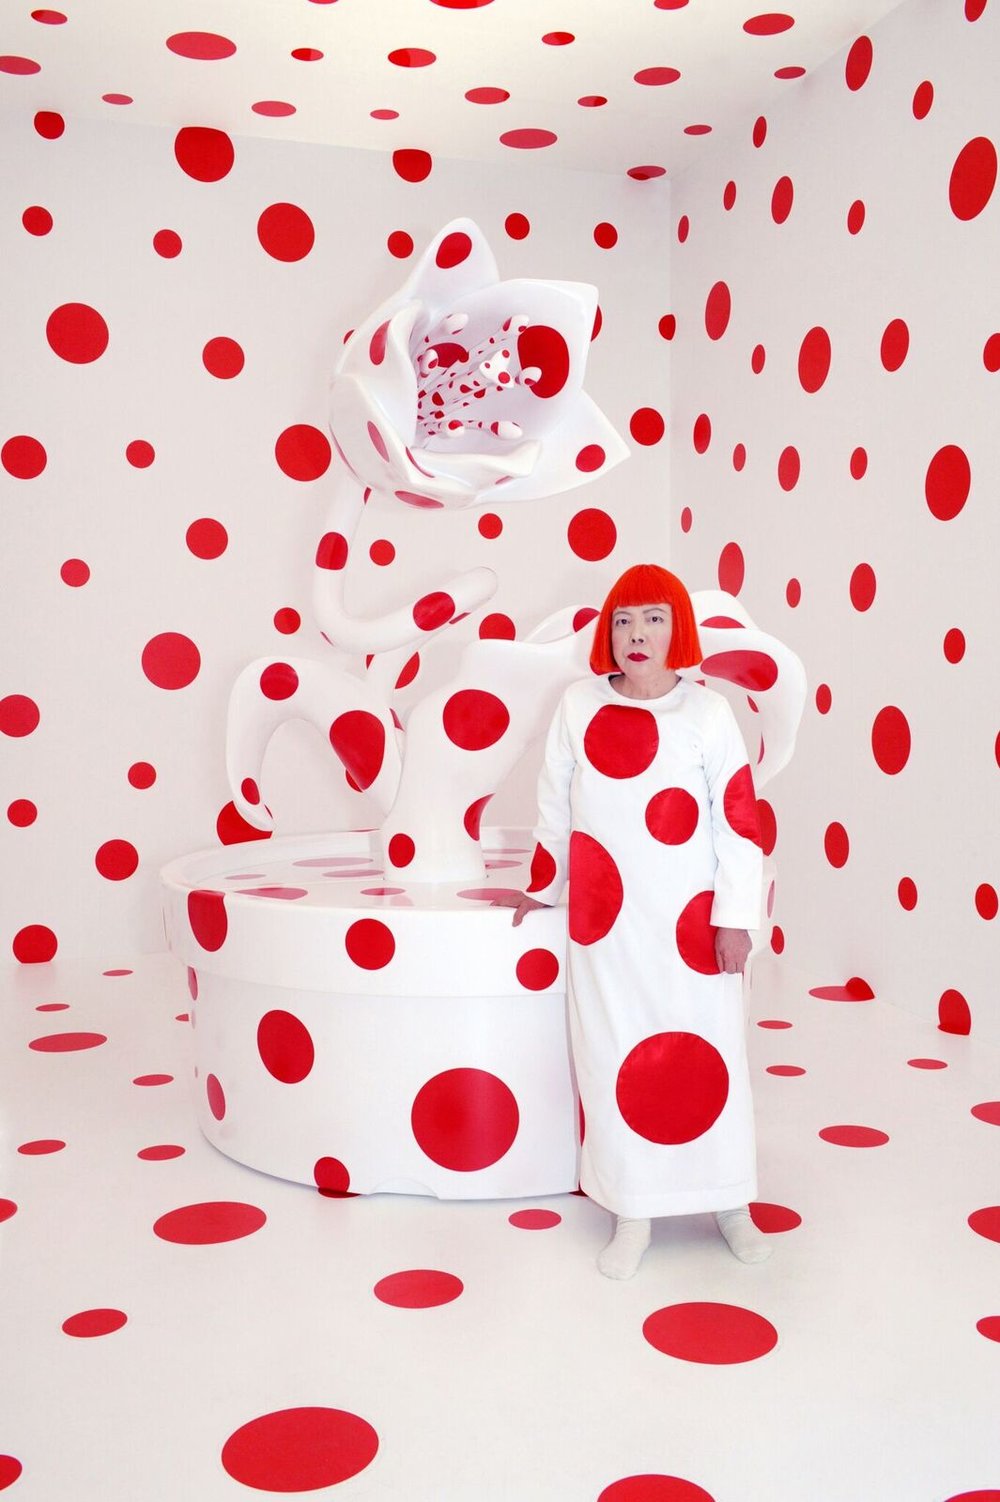 Yayoi Kusama's polka dots are the fashion trend for fall, art, Agenda